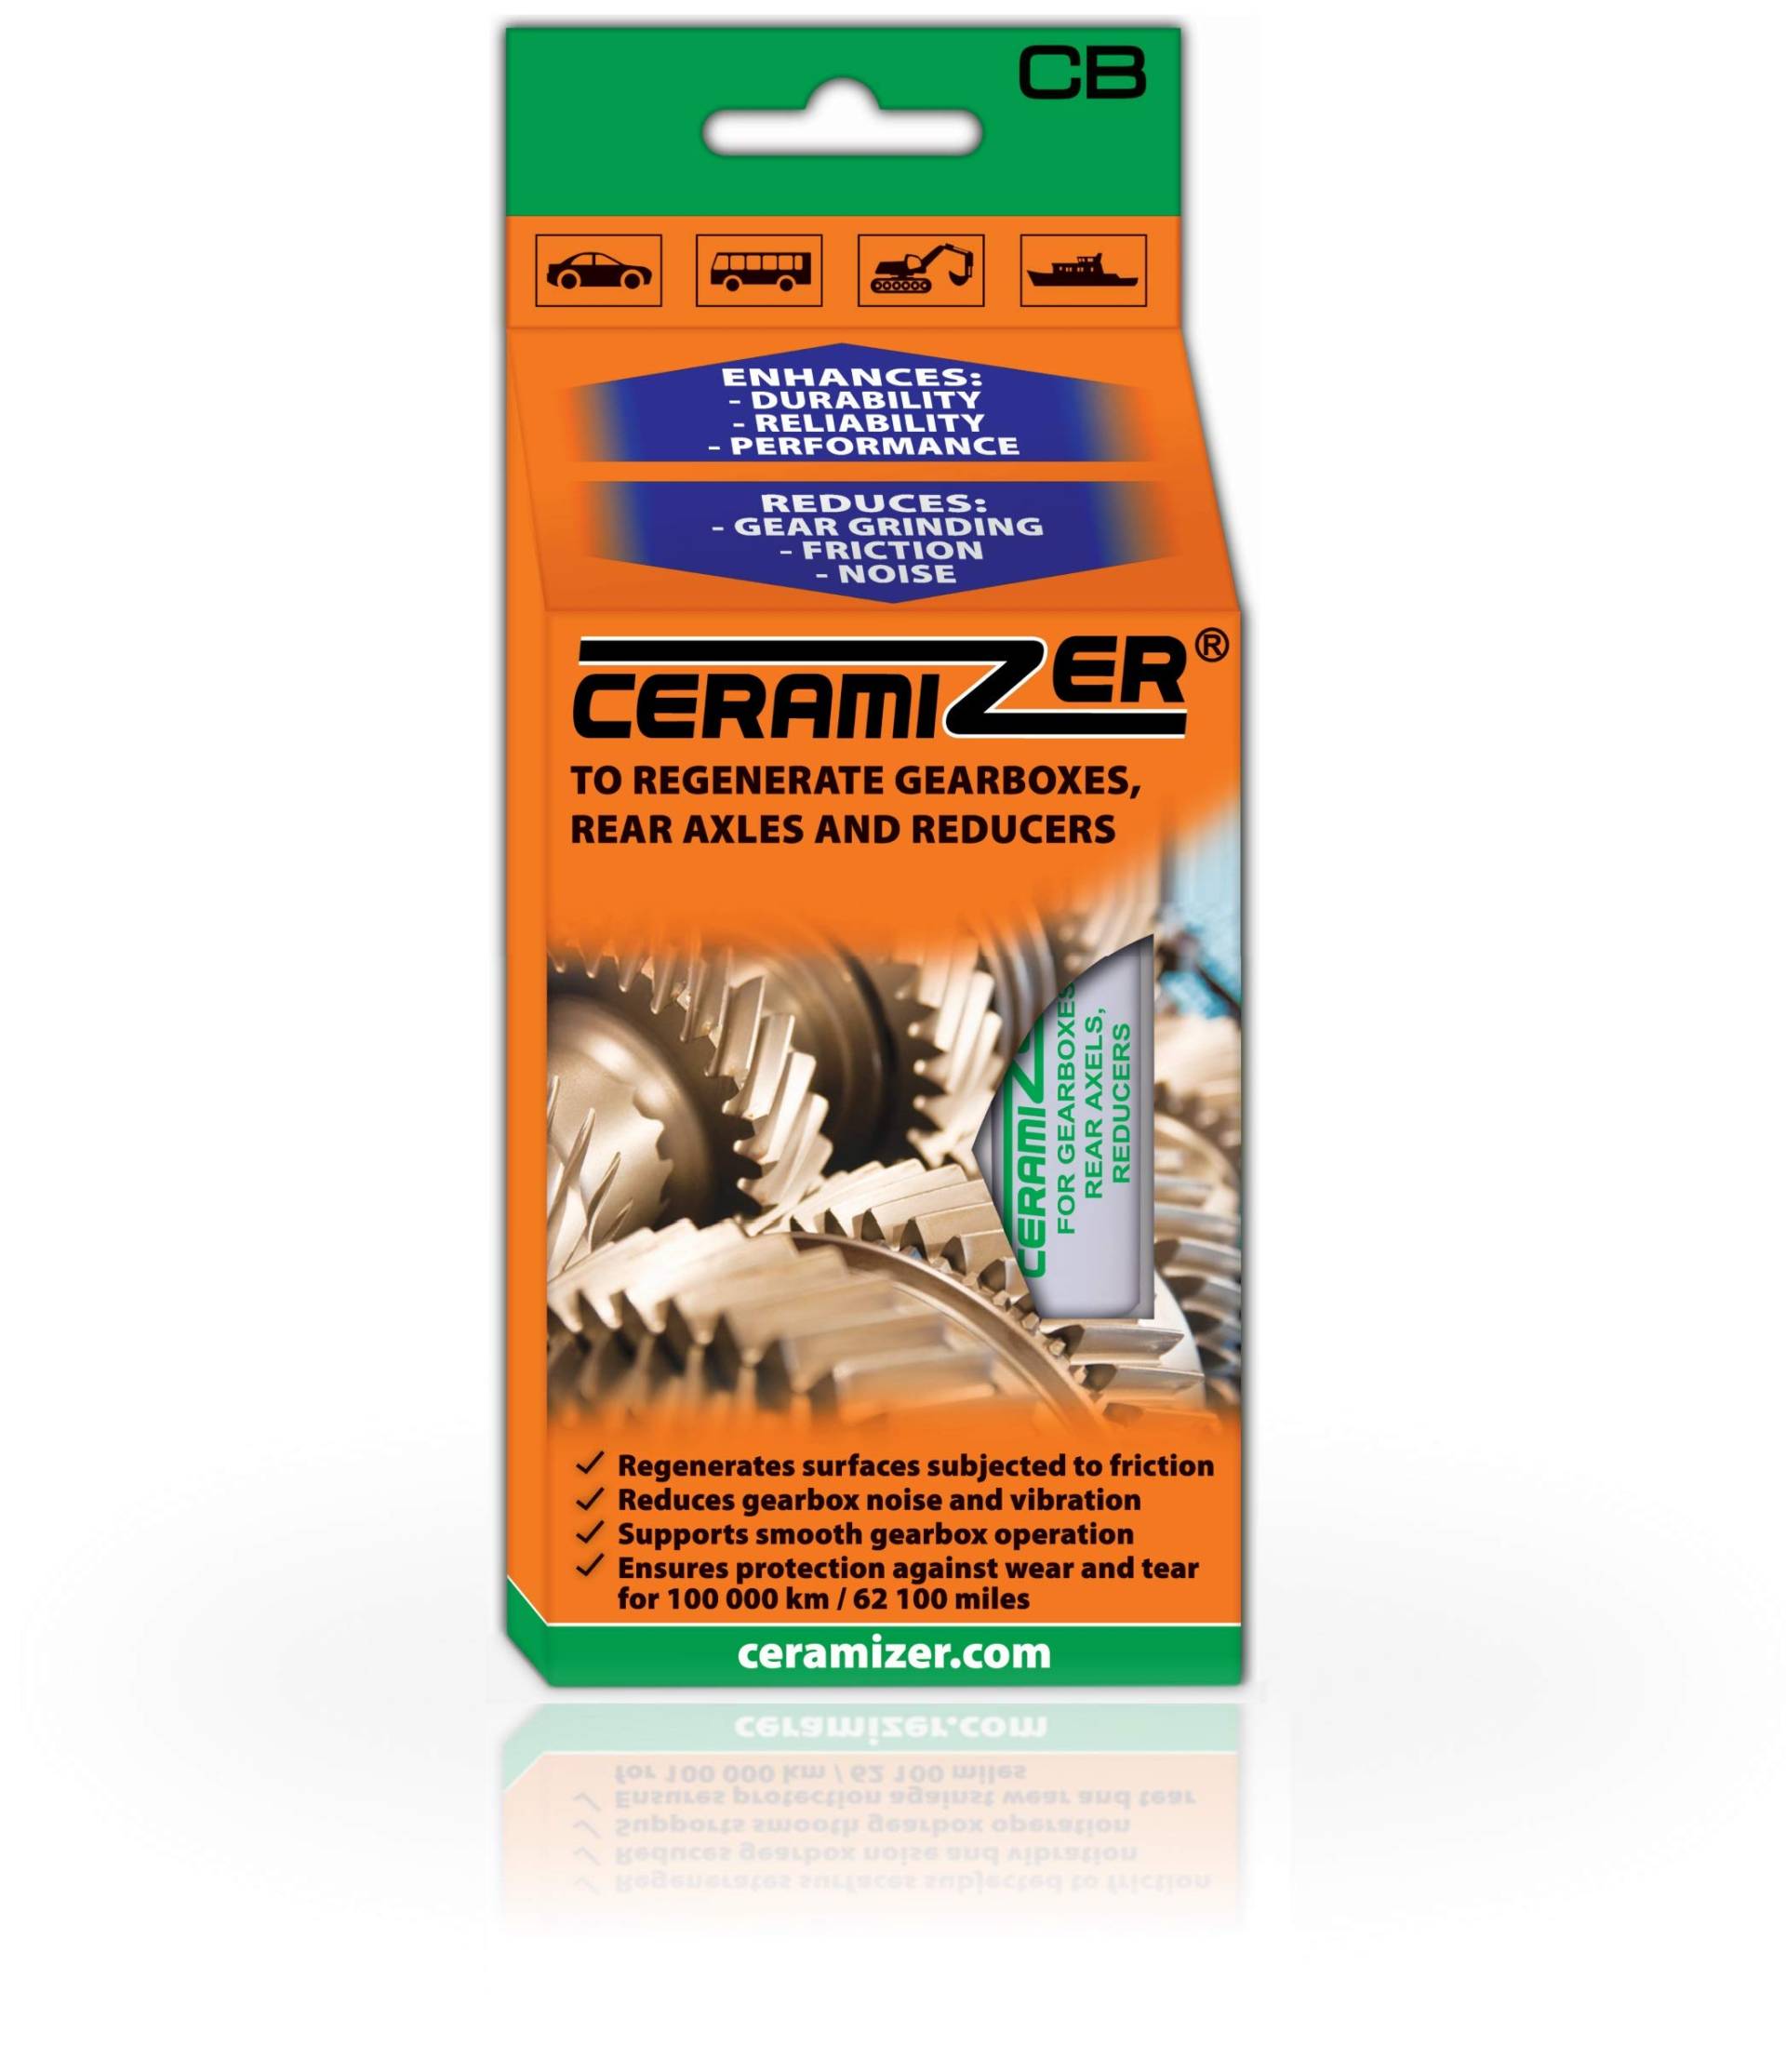 Ceramizer – Getriebe für Regenerieren, Achsen hinten und getrieben von Ceramizer